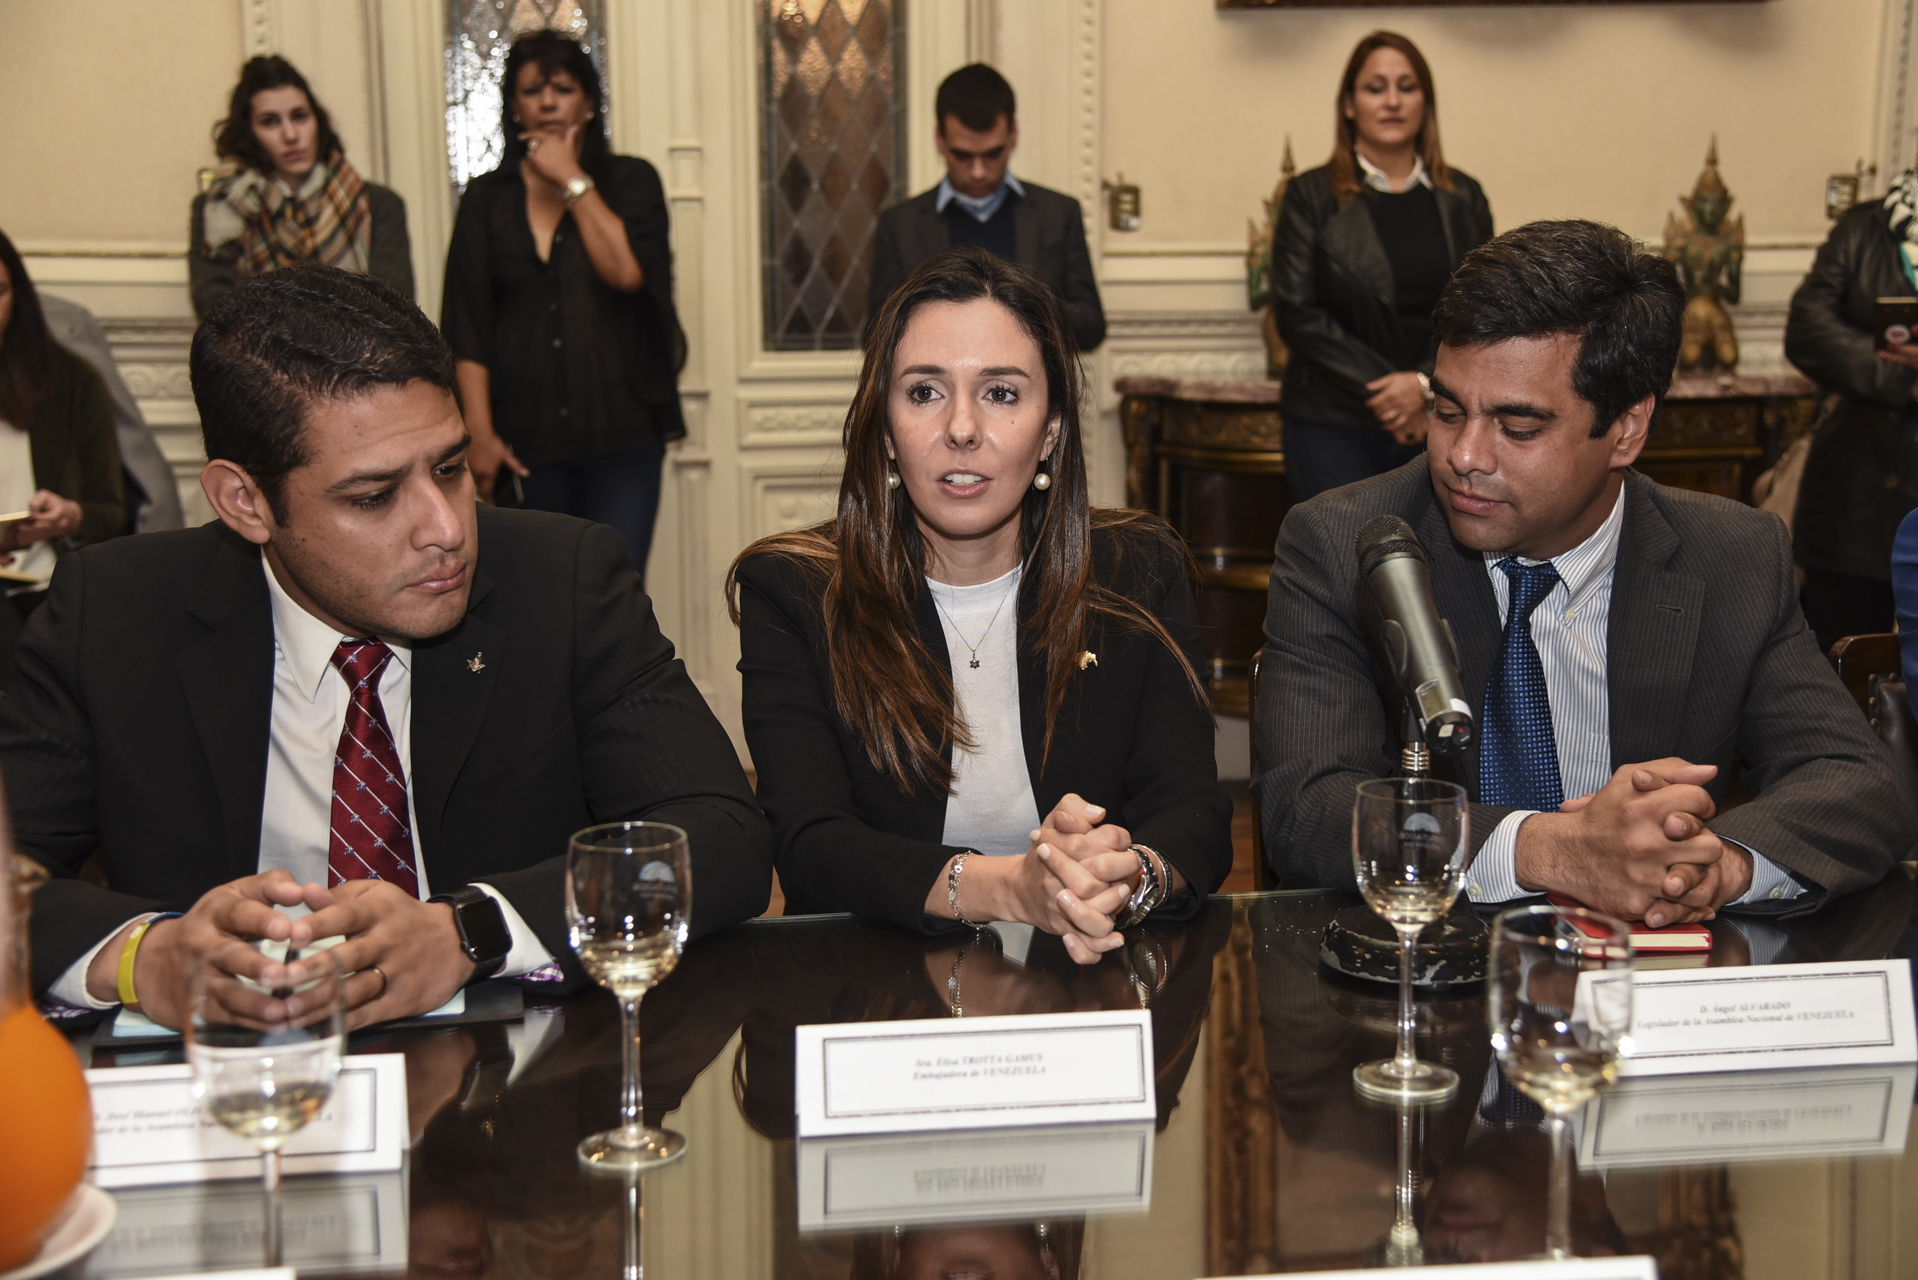 La defensa de las instituciones, eje de un encuentro con representantes de Venezuela